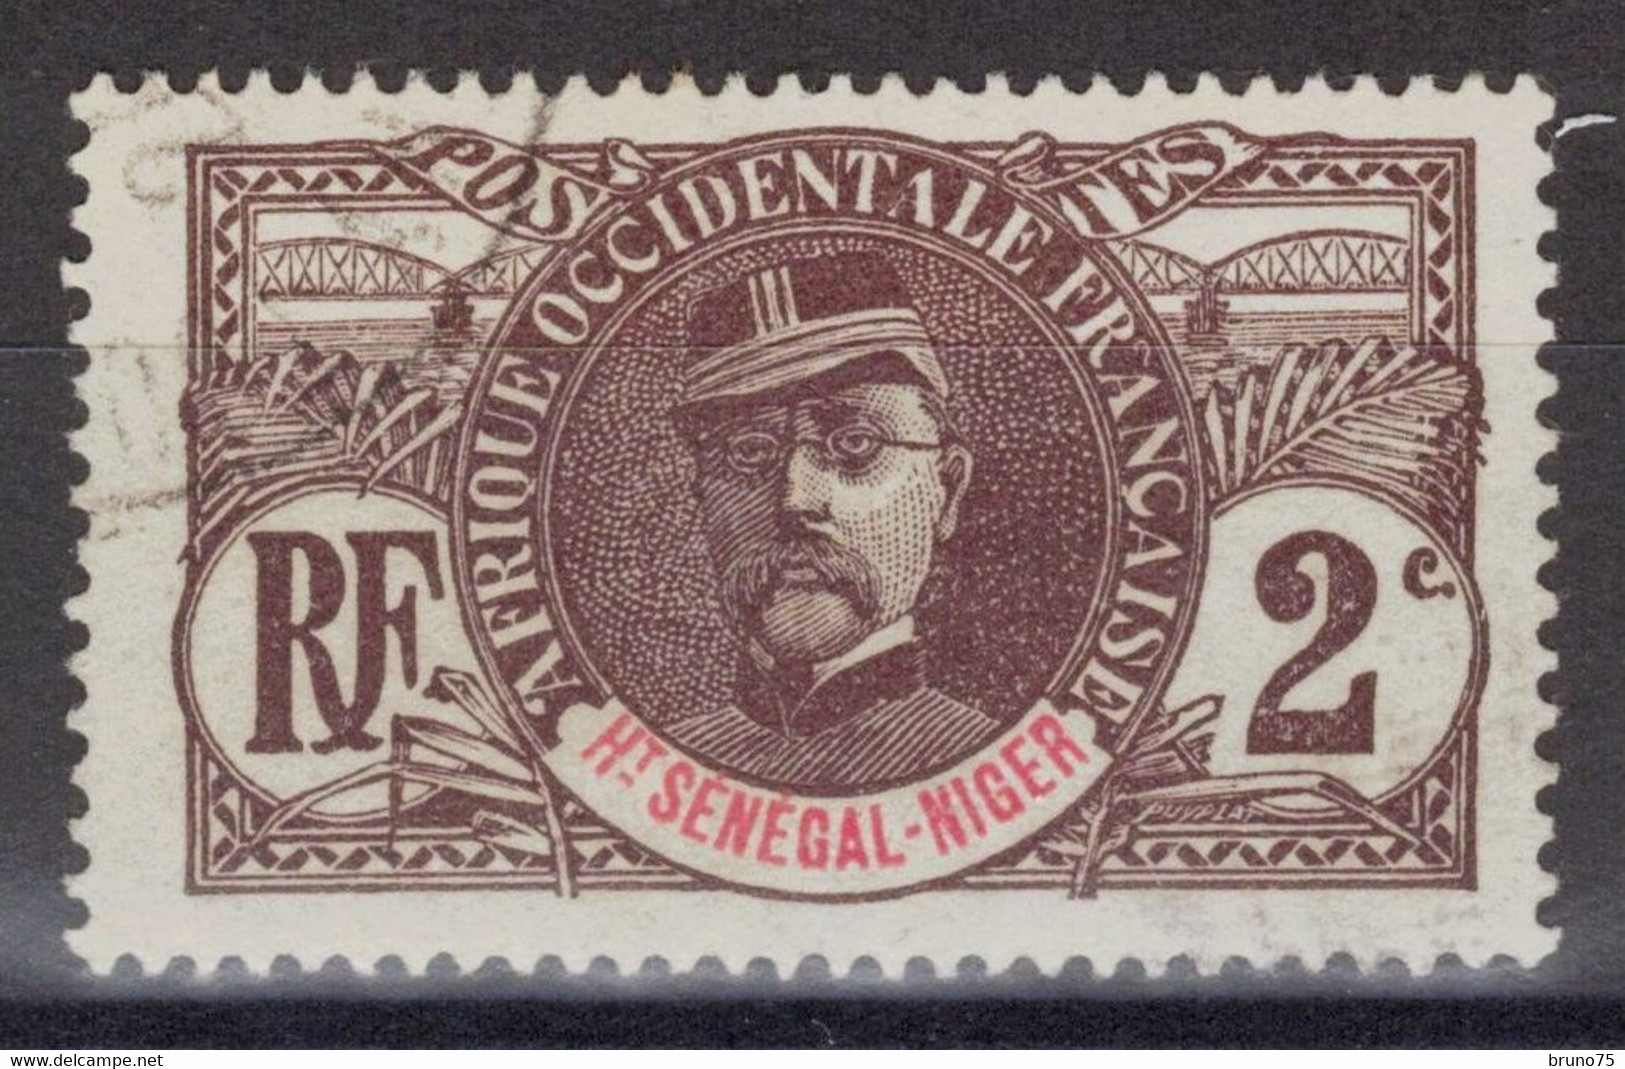 Haut-Sénégal Et Niger - YT 2 Oblitéré - 1906 - Used Stamps